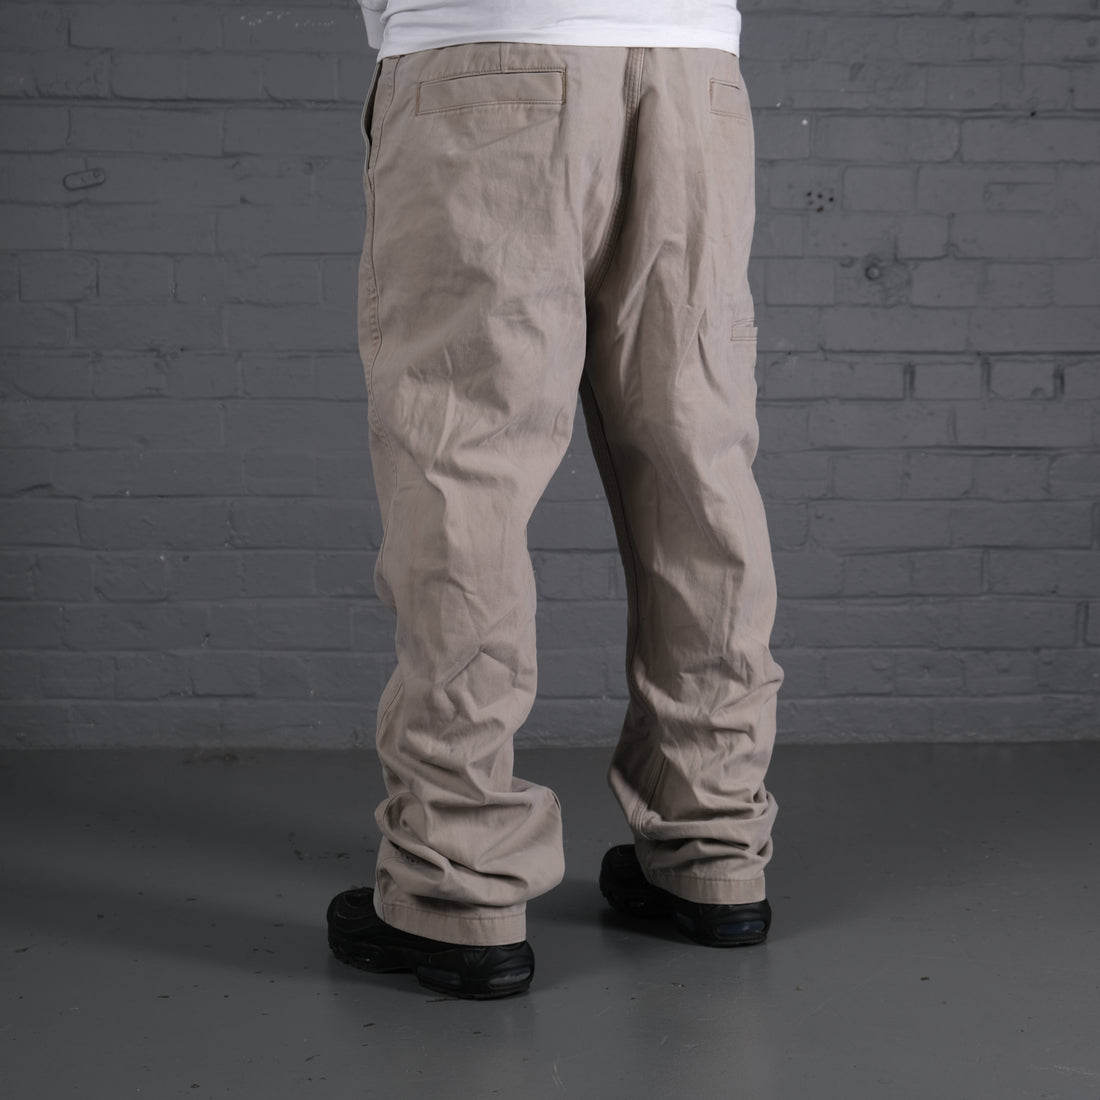 Carhartt Chino Trousers in Cream.